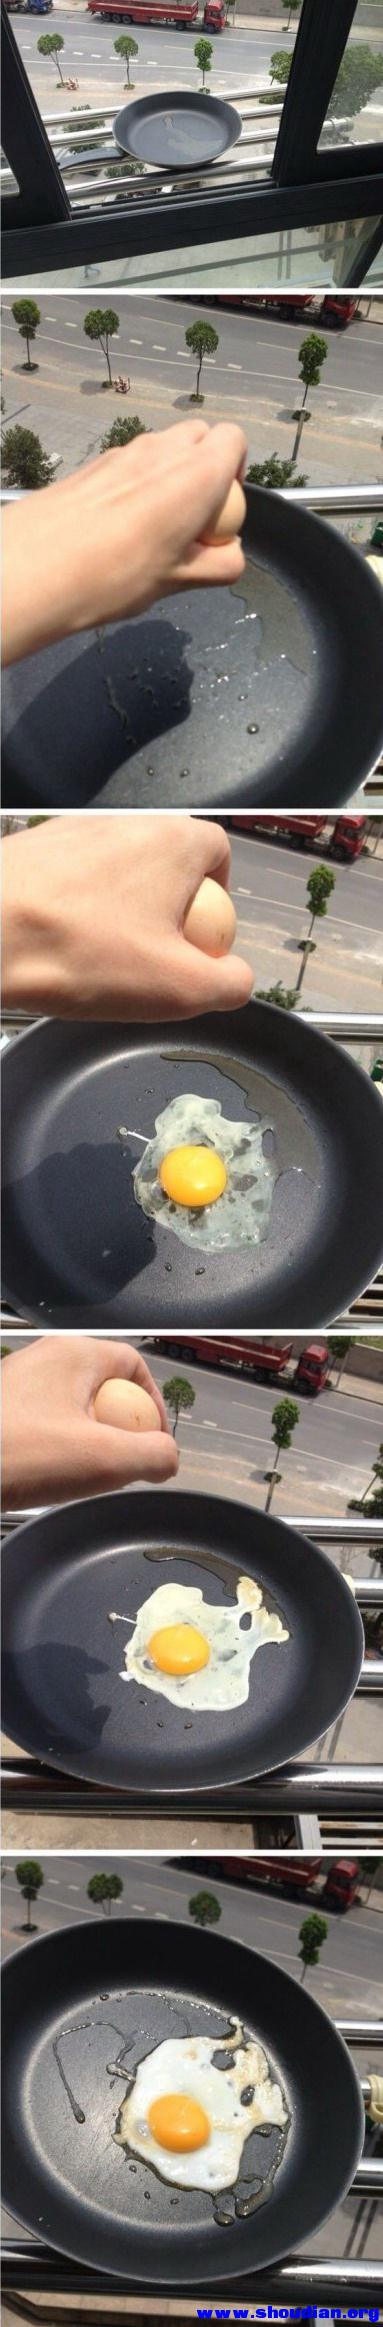 煎鸡蛋.jpg